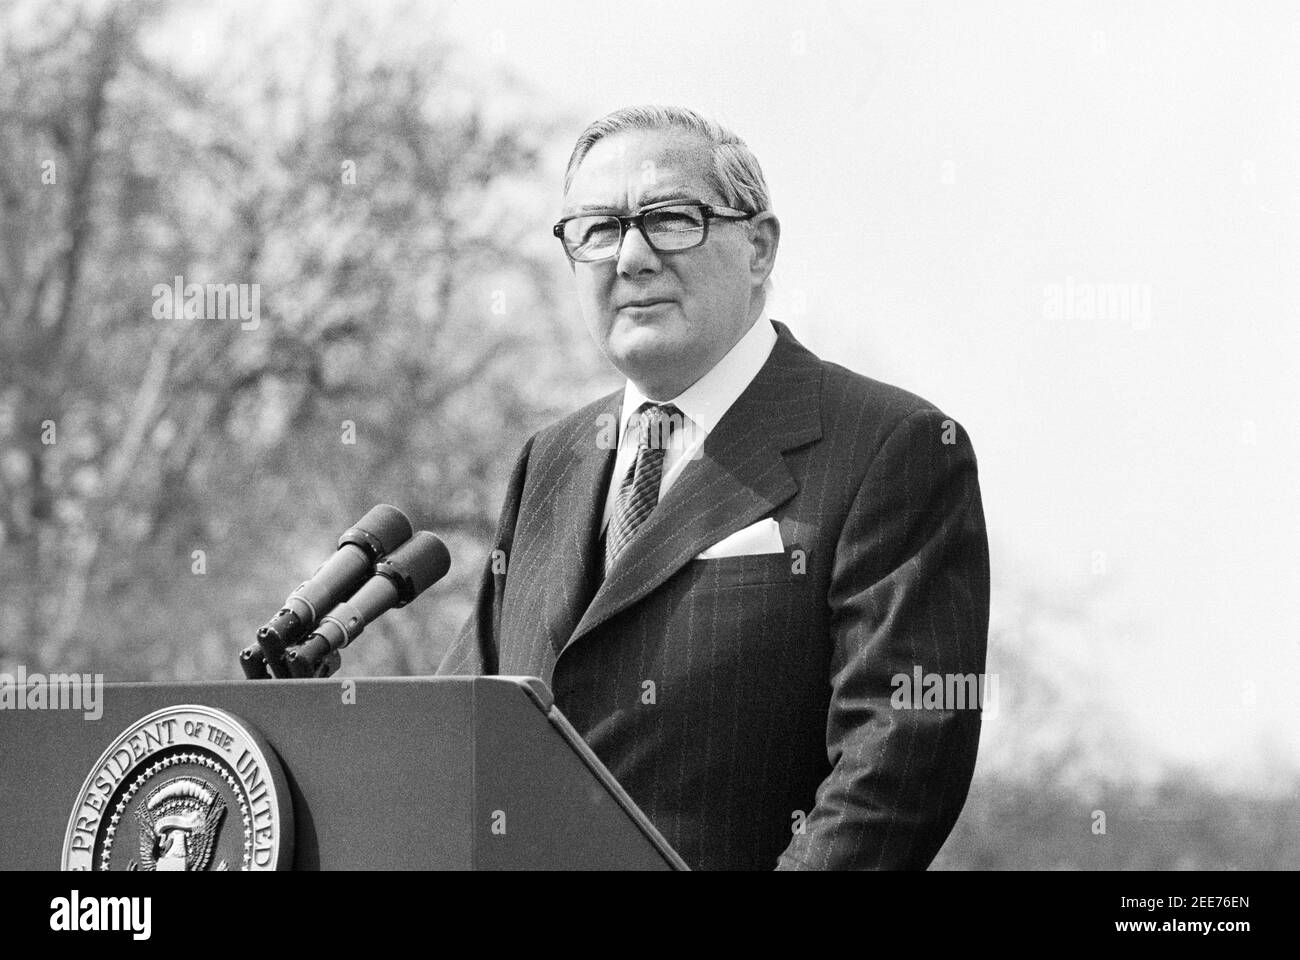 Il primo ministro britannico James Callaghan durante il discorso alla Casa Bianca, Washington, D.C., USA, Marion S. Trikosko, 10 marzo 1977 Foto Stock